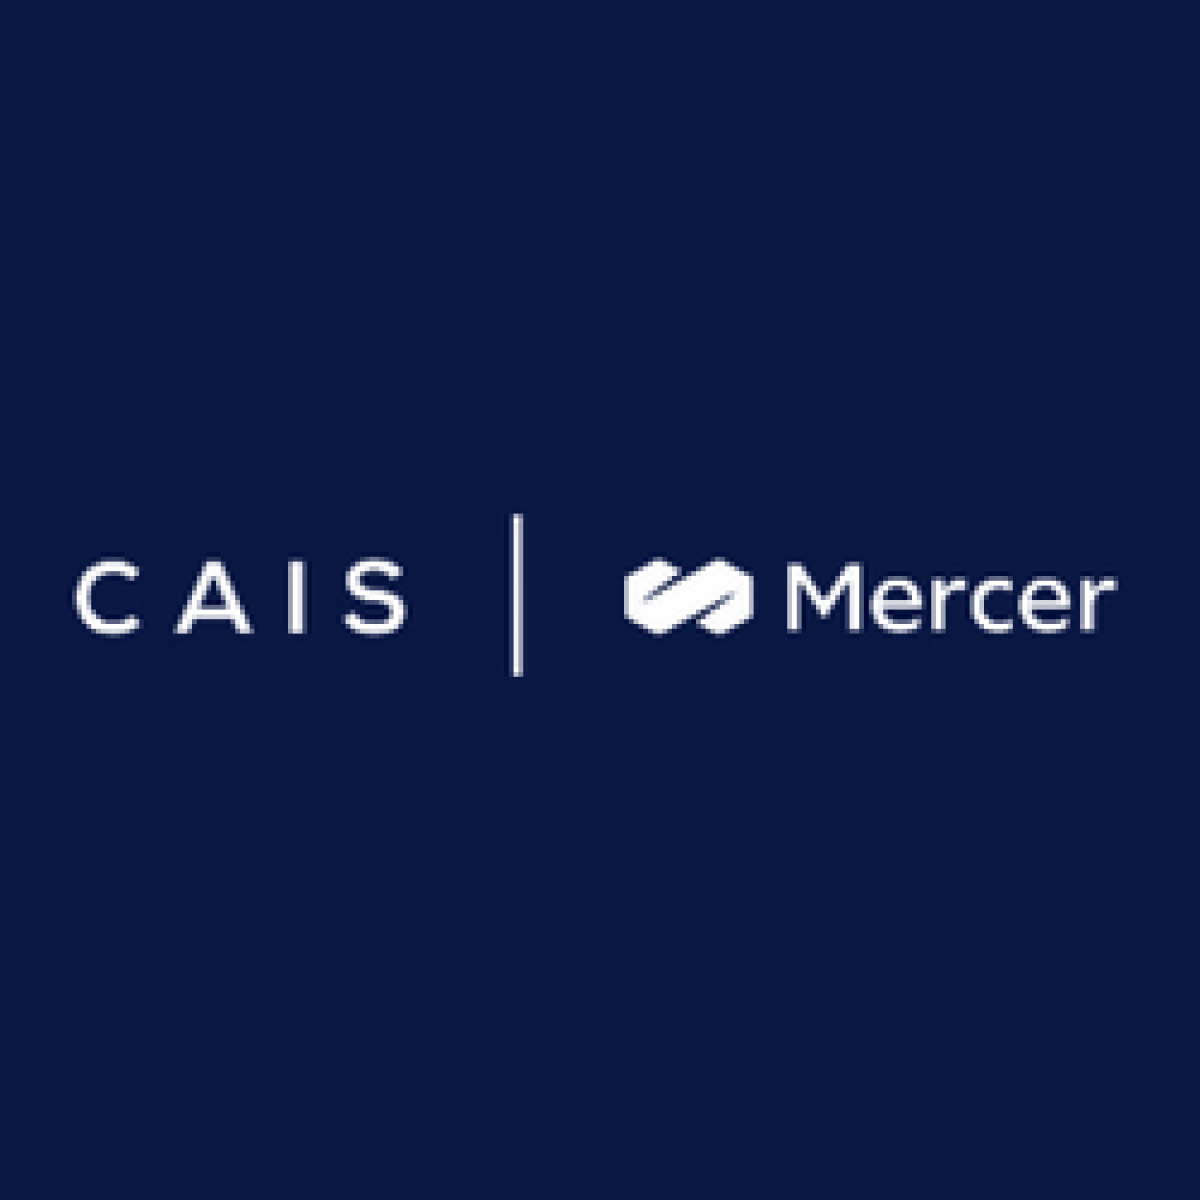 cais and mercer logo